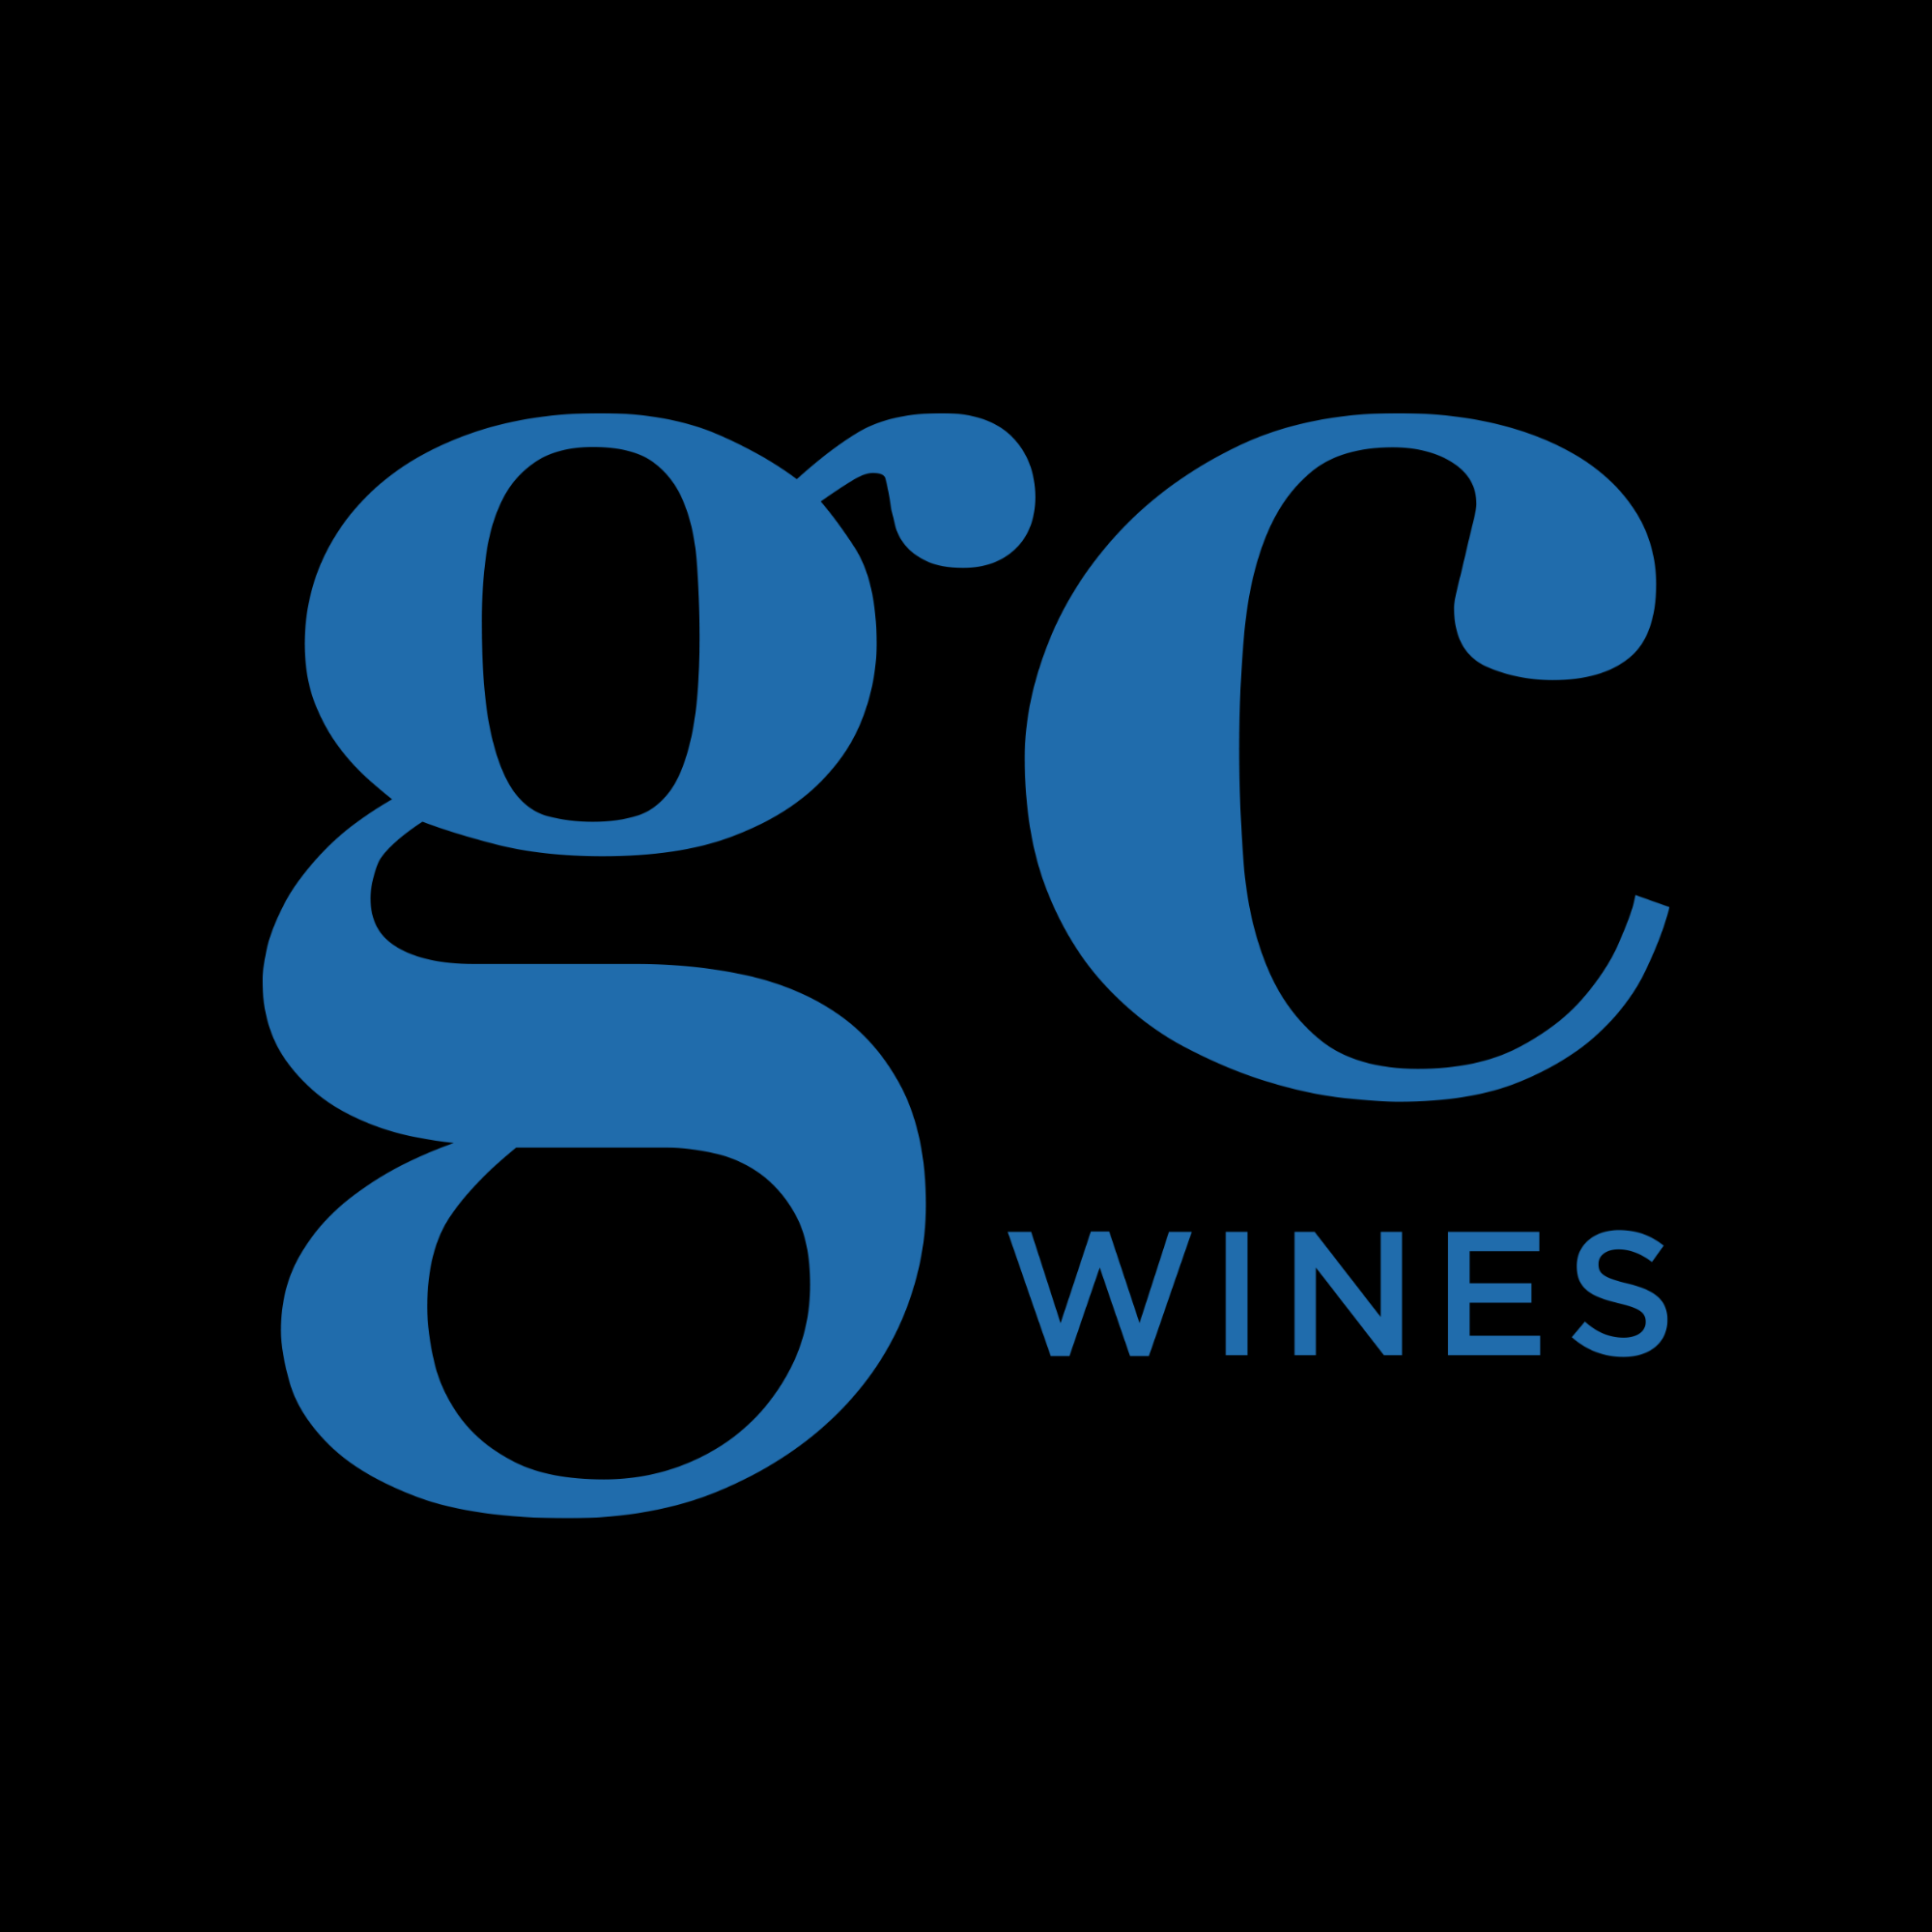 GC Wines